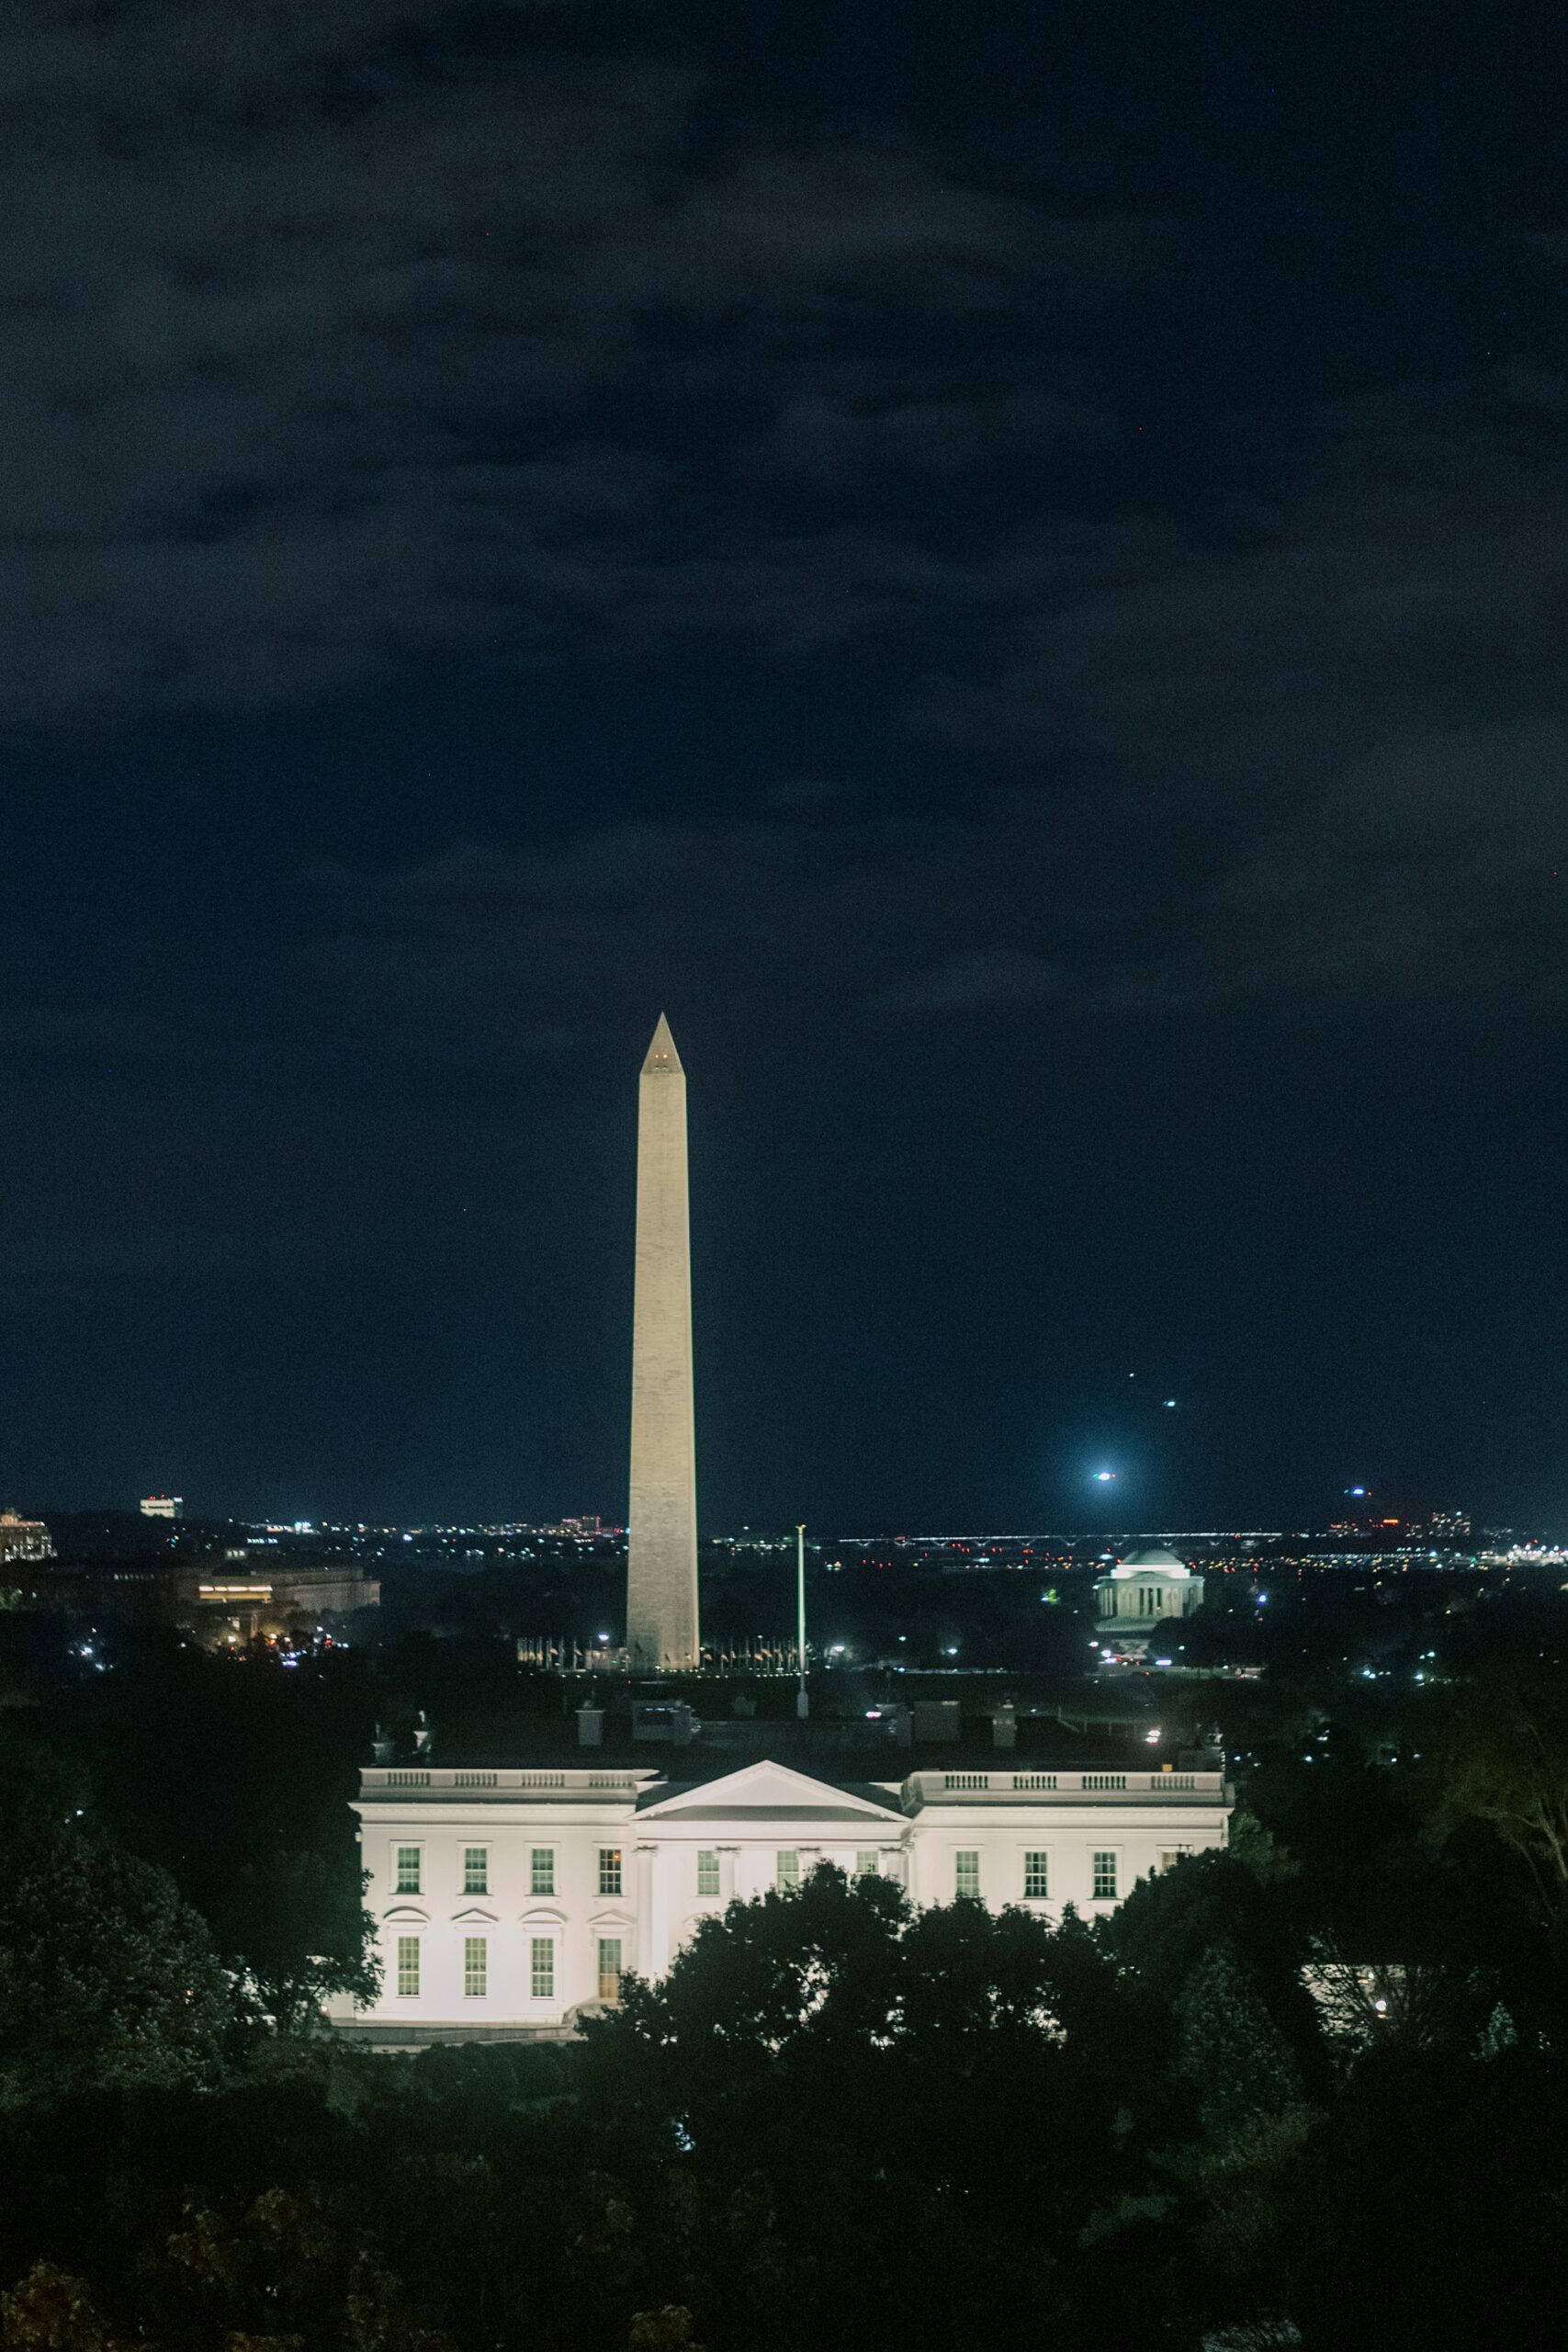 nighttime phot of Washington Monument 